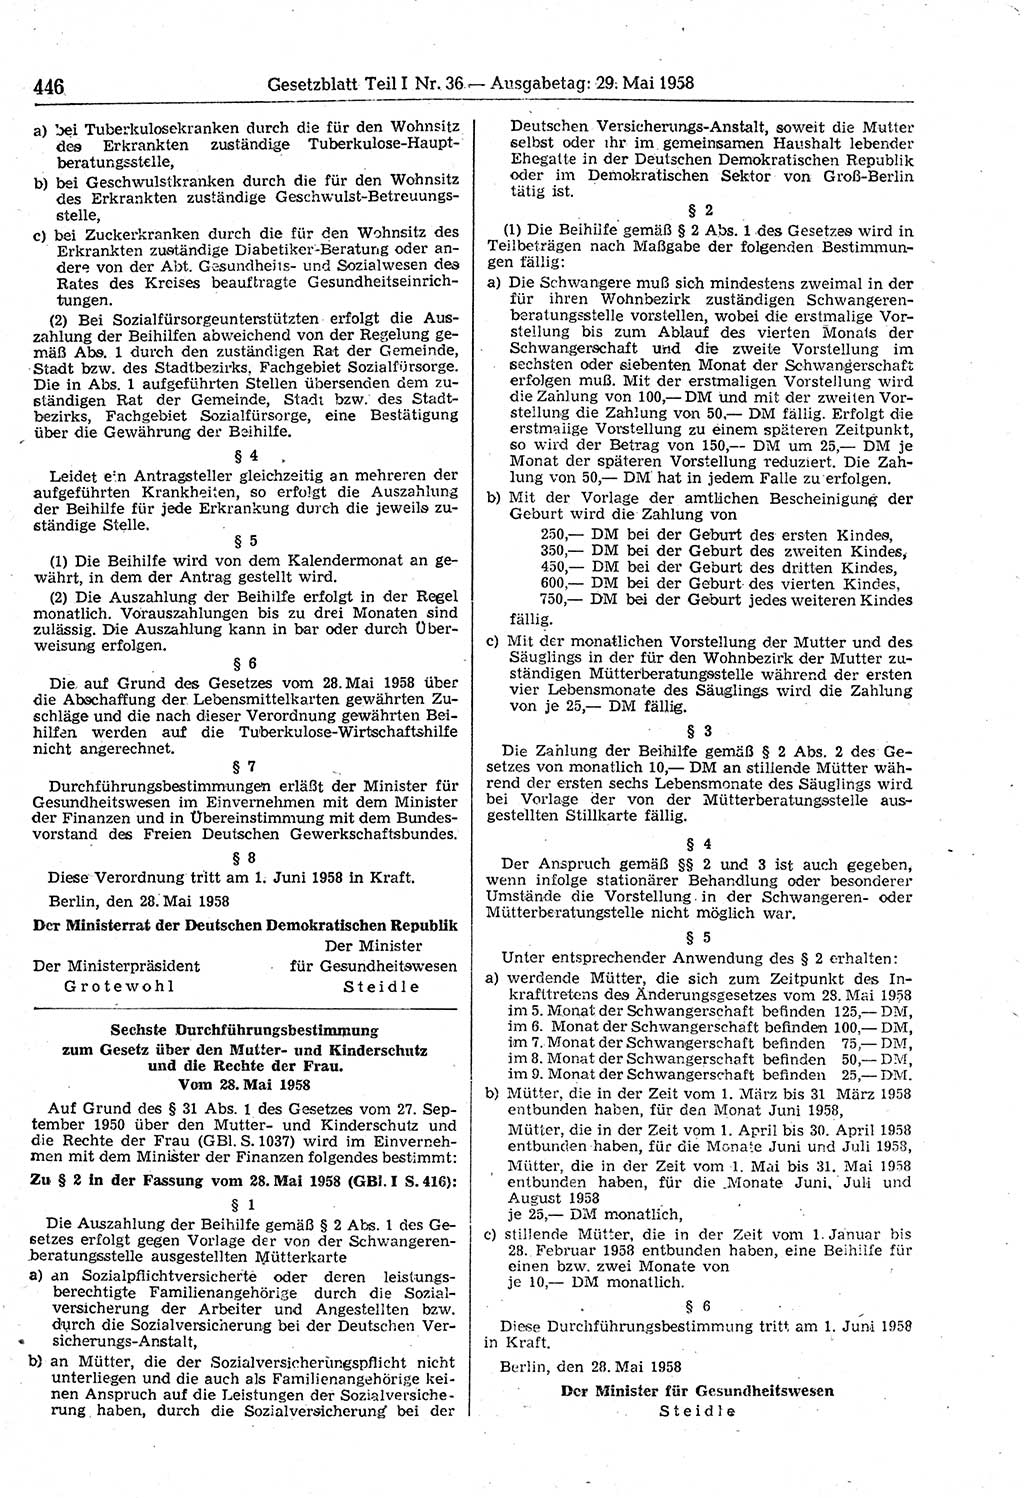 Gesetzblatt (GBl.) der Deutschen Demokratischen Republik (DDR) Teil Ⅰ 1958, Seite 446 (GBl. DDR Ⅰ 1958, S. 446)